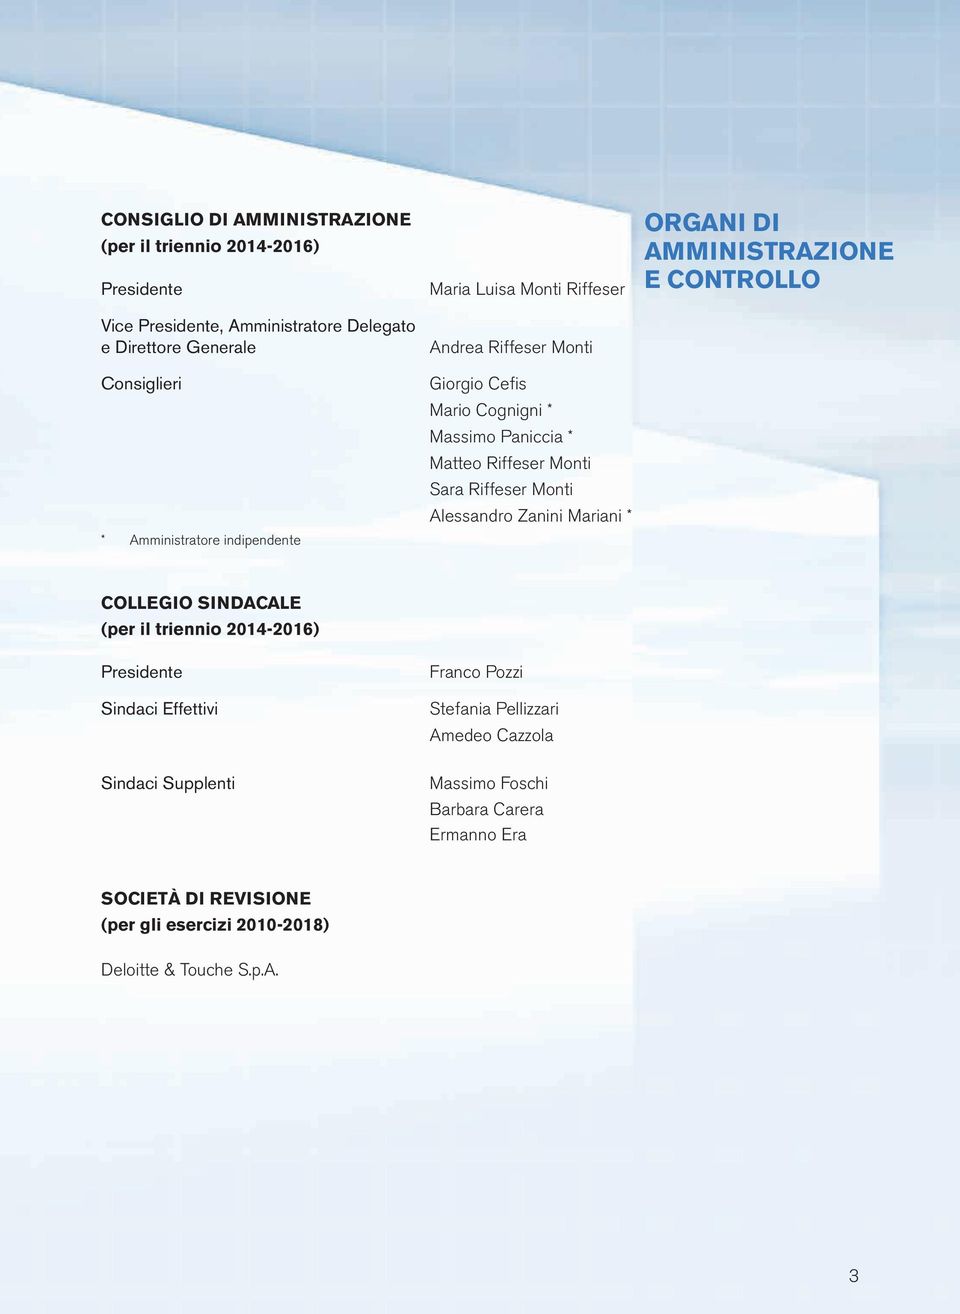 Alessandro Zanini Mariani * ORGANI DI AMMINISTRAZIONE E CONTROLLO COLLEGIO SINDACALE (per il triennio 2014-2016) Presidente Sindaci Effettivi Franco Pozzi